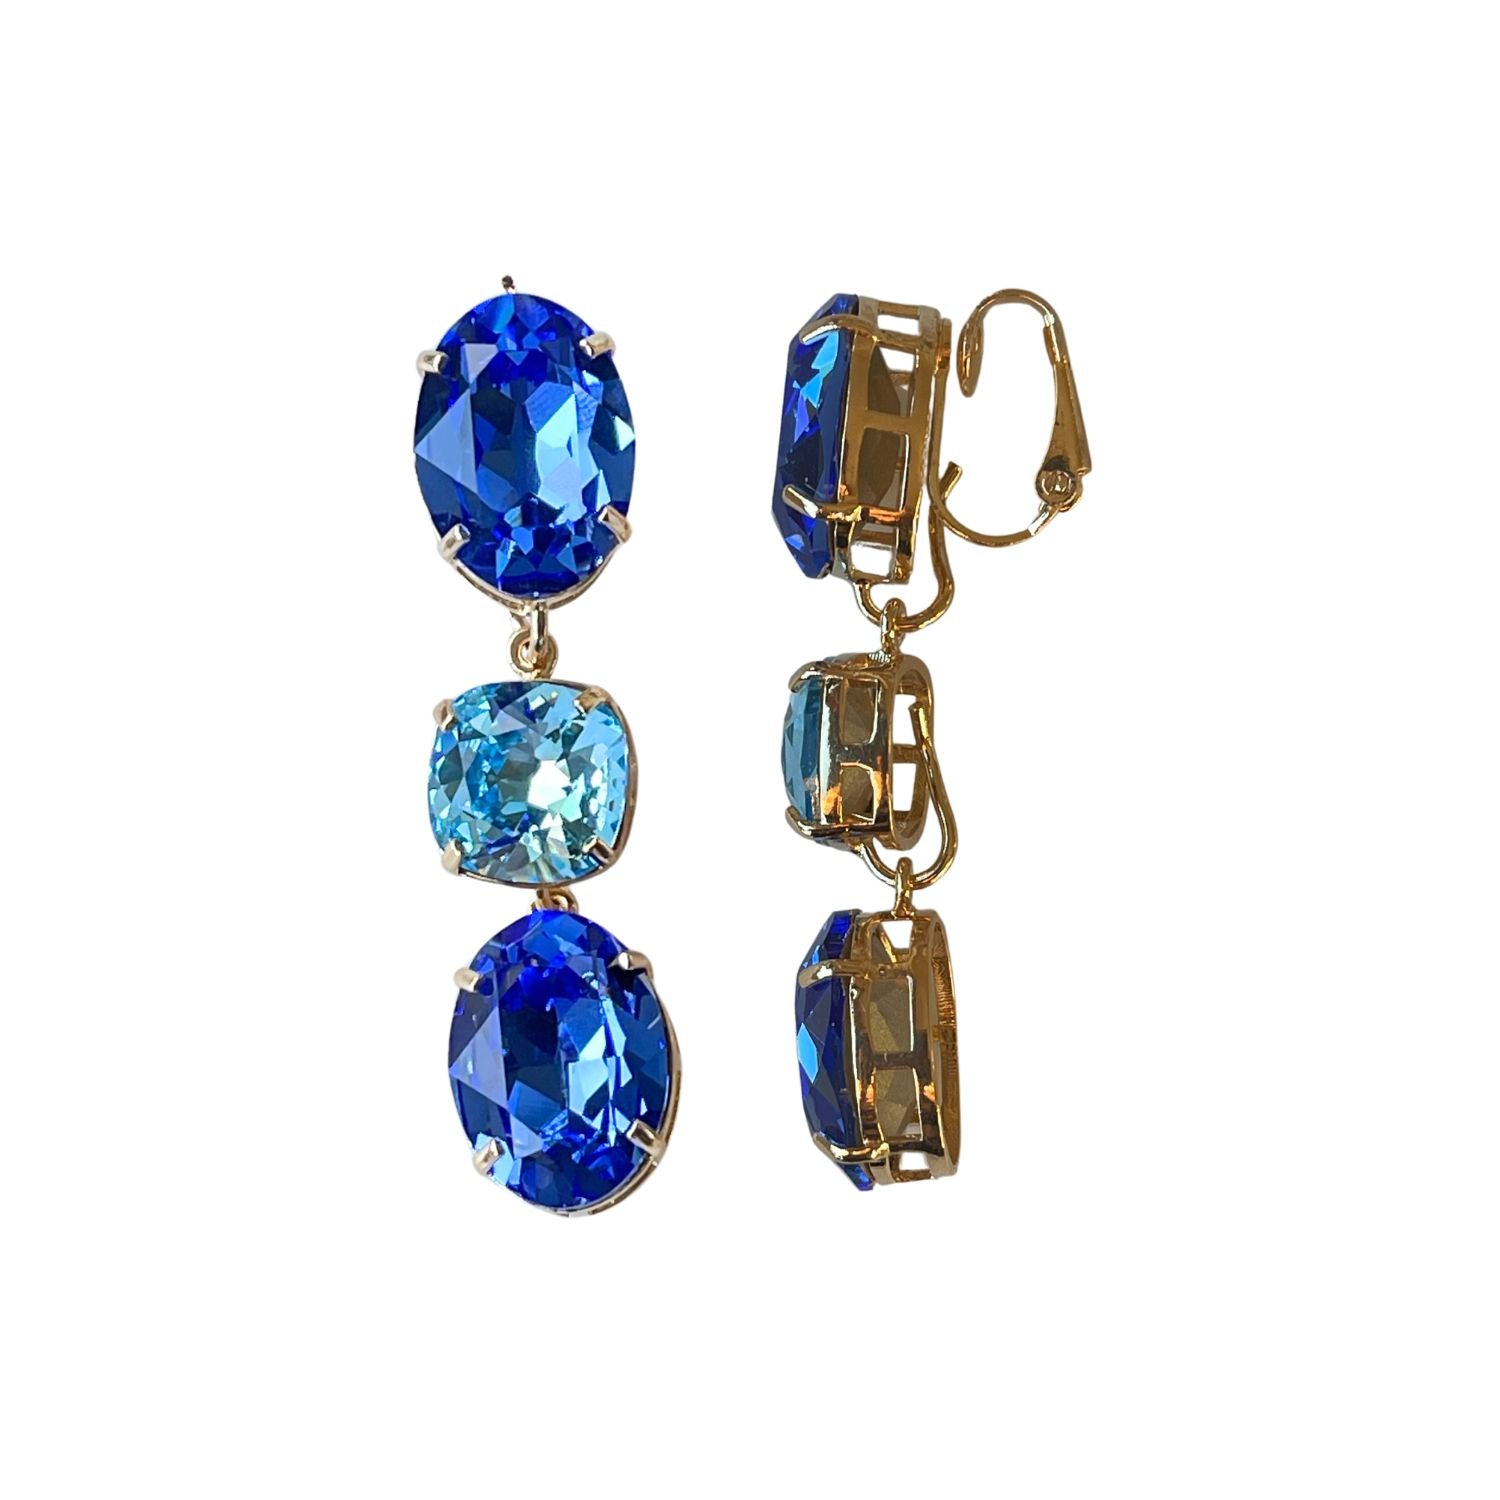 Erleben Sie die Eleganz der "GLOW"-Ohrringe mit  blauen Kristallen. Die grüne Basis kann separat getragen werden und verleiht einen dezenten, dennoch wunderschönen Touch. Die weltberühmten Swarovski Kristalle sorgen für Glanz und zeitlose Eleganz.